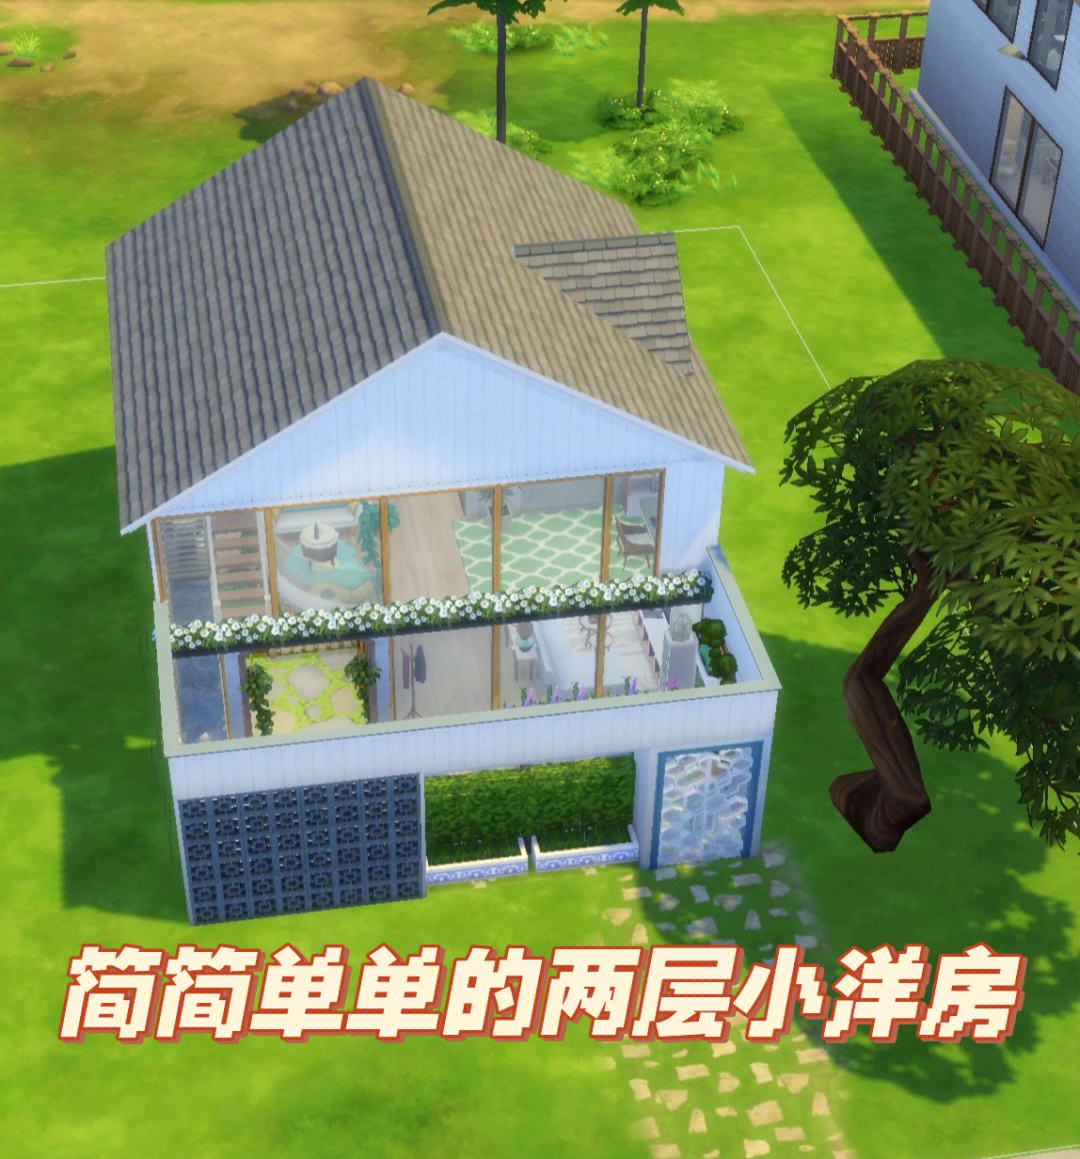 模拟房屋免费人生版下载安装_模拟人生免费版房屋_模拟房屋破解版